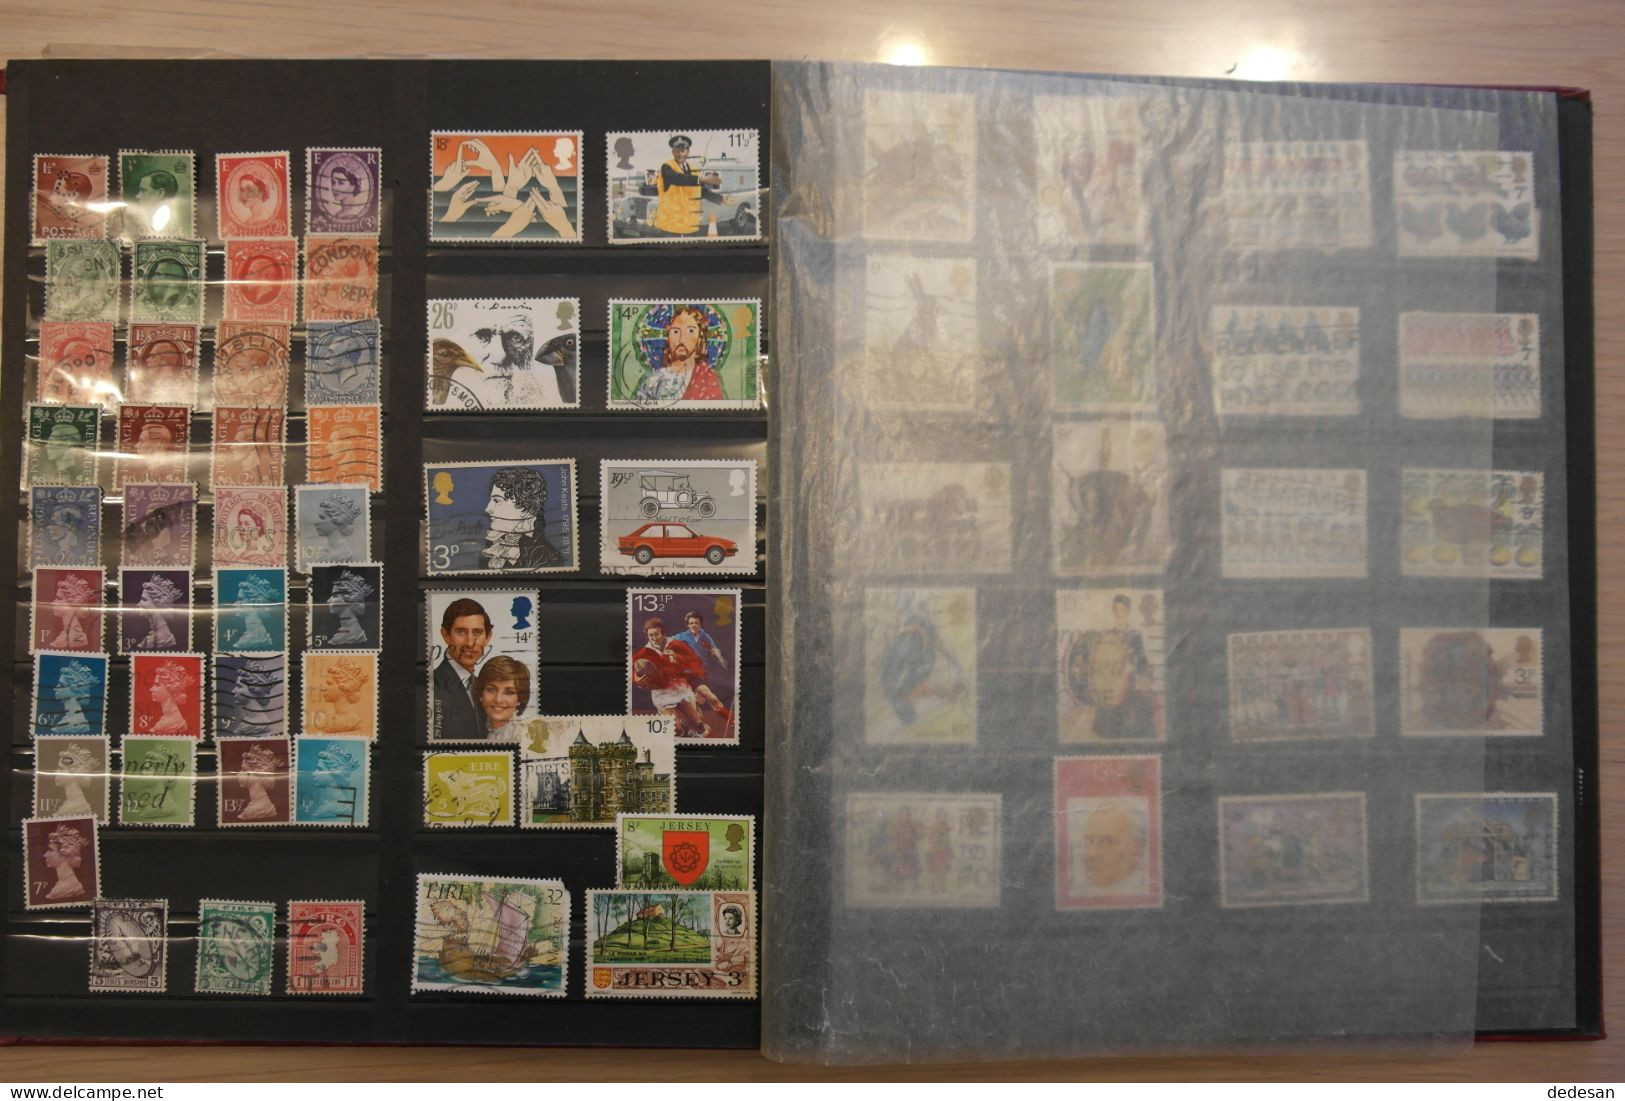 Lot de timbres étrangers tous pays sauf France - Nombreuses photos